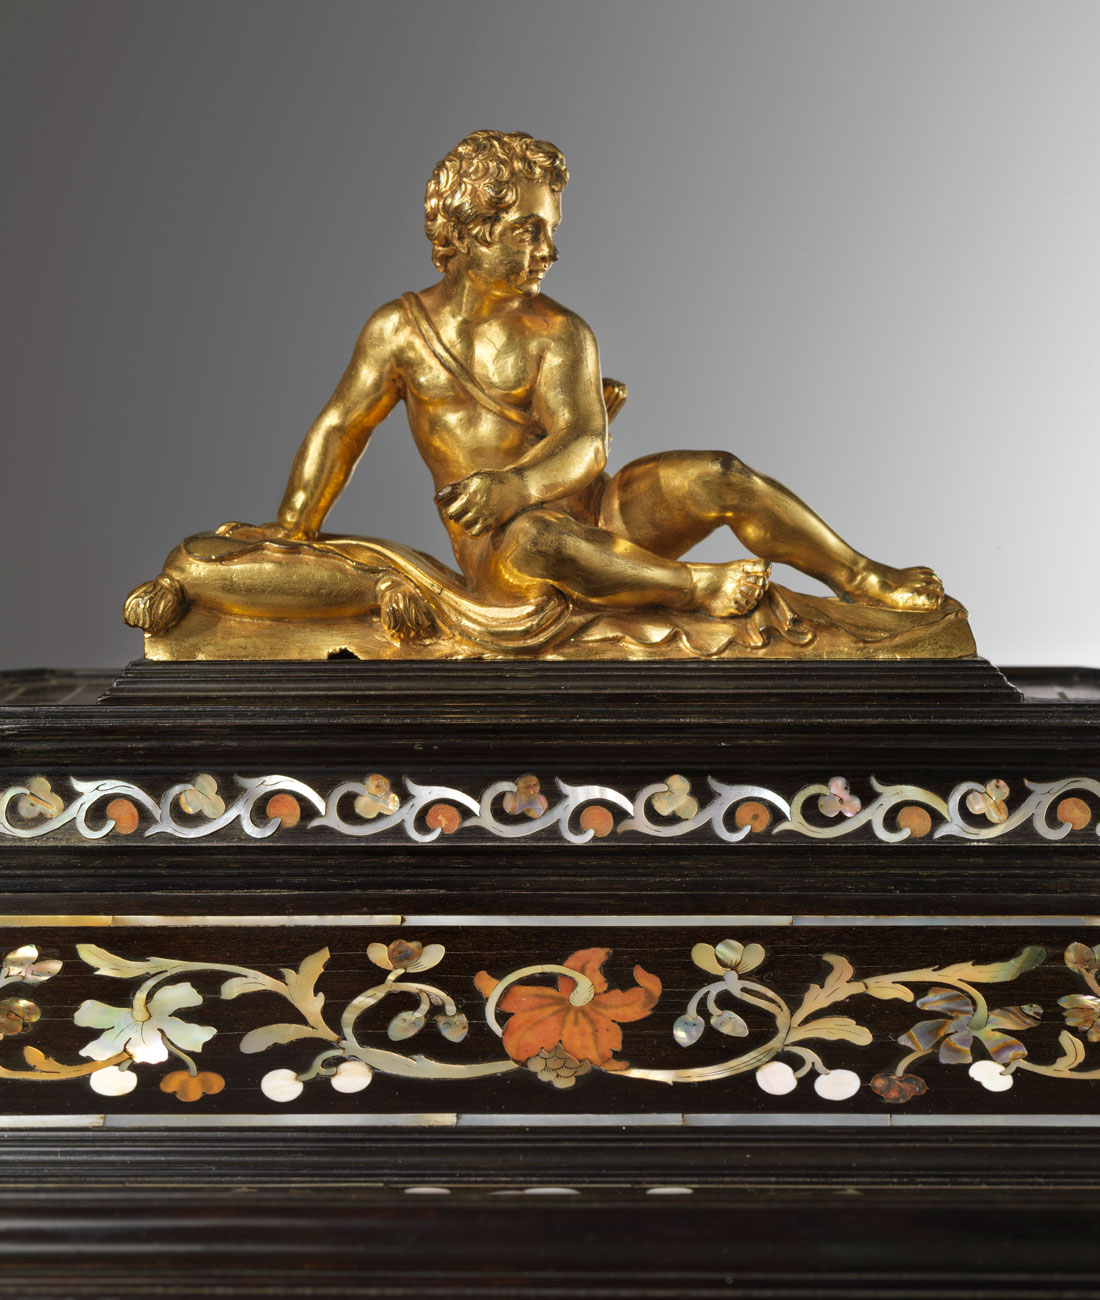 Florentine Grand Ducal Workshops - Octagonal casket